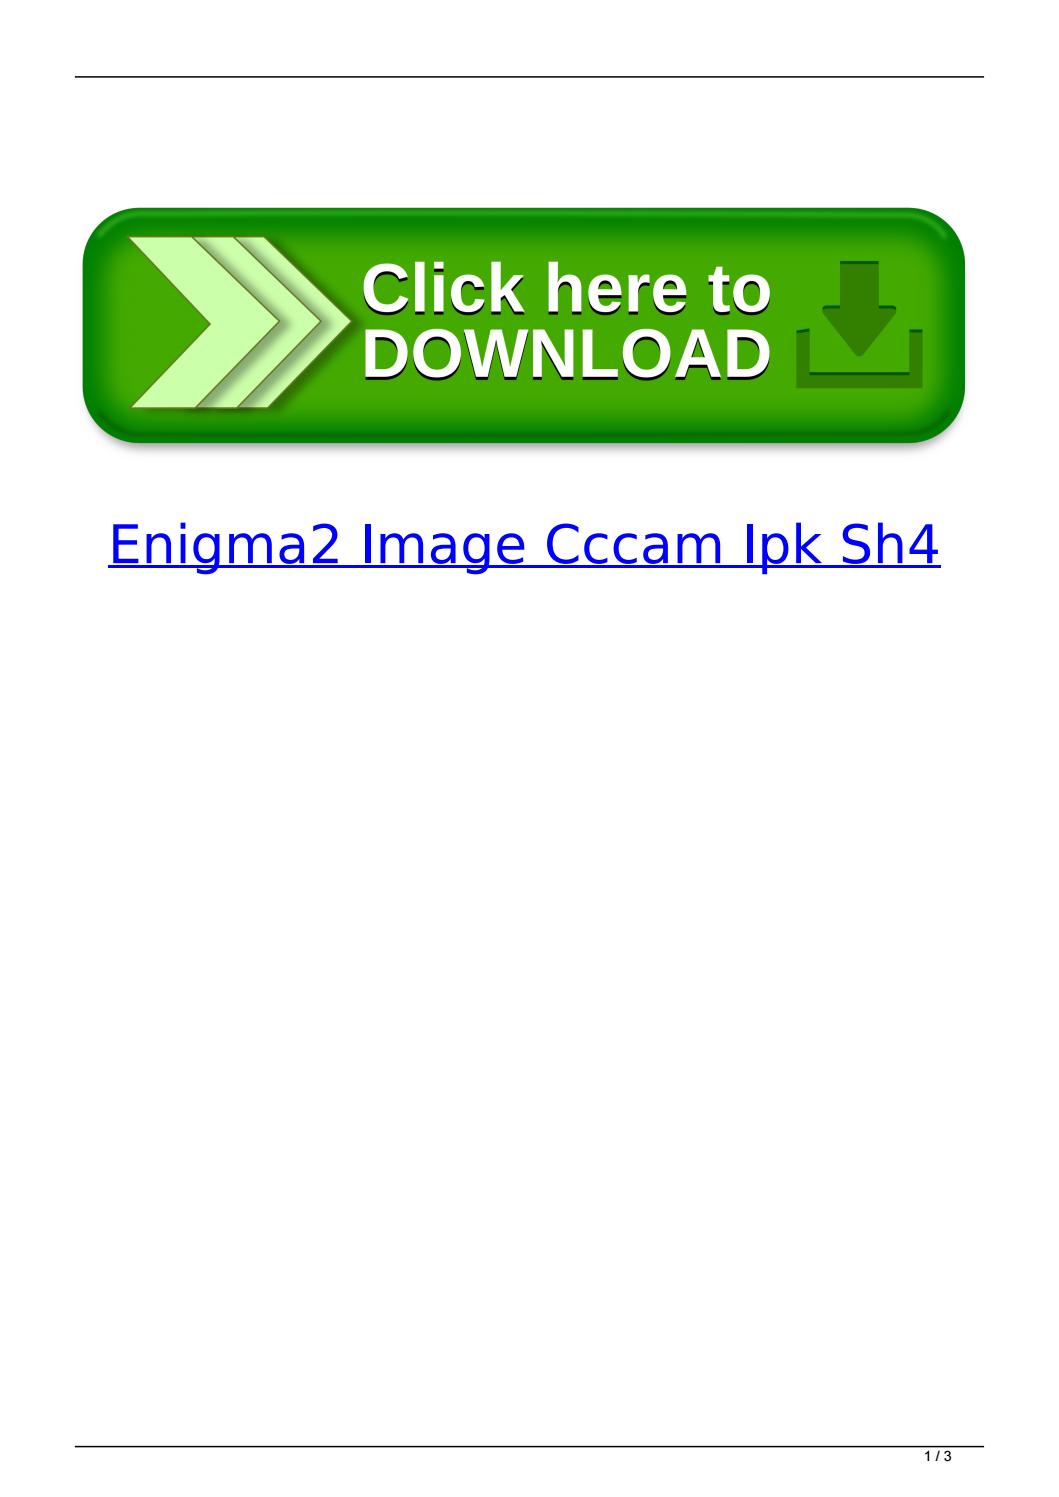 cccam 2.2.1 ipk download